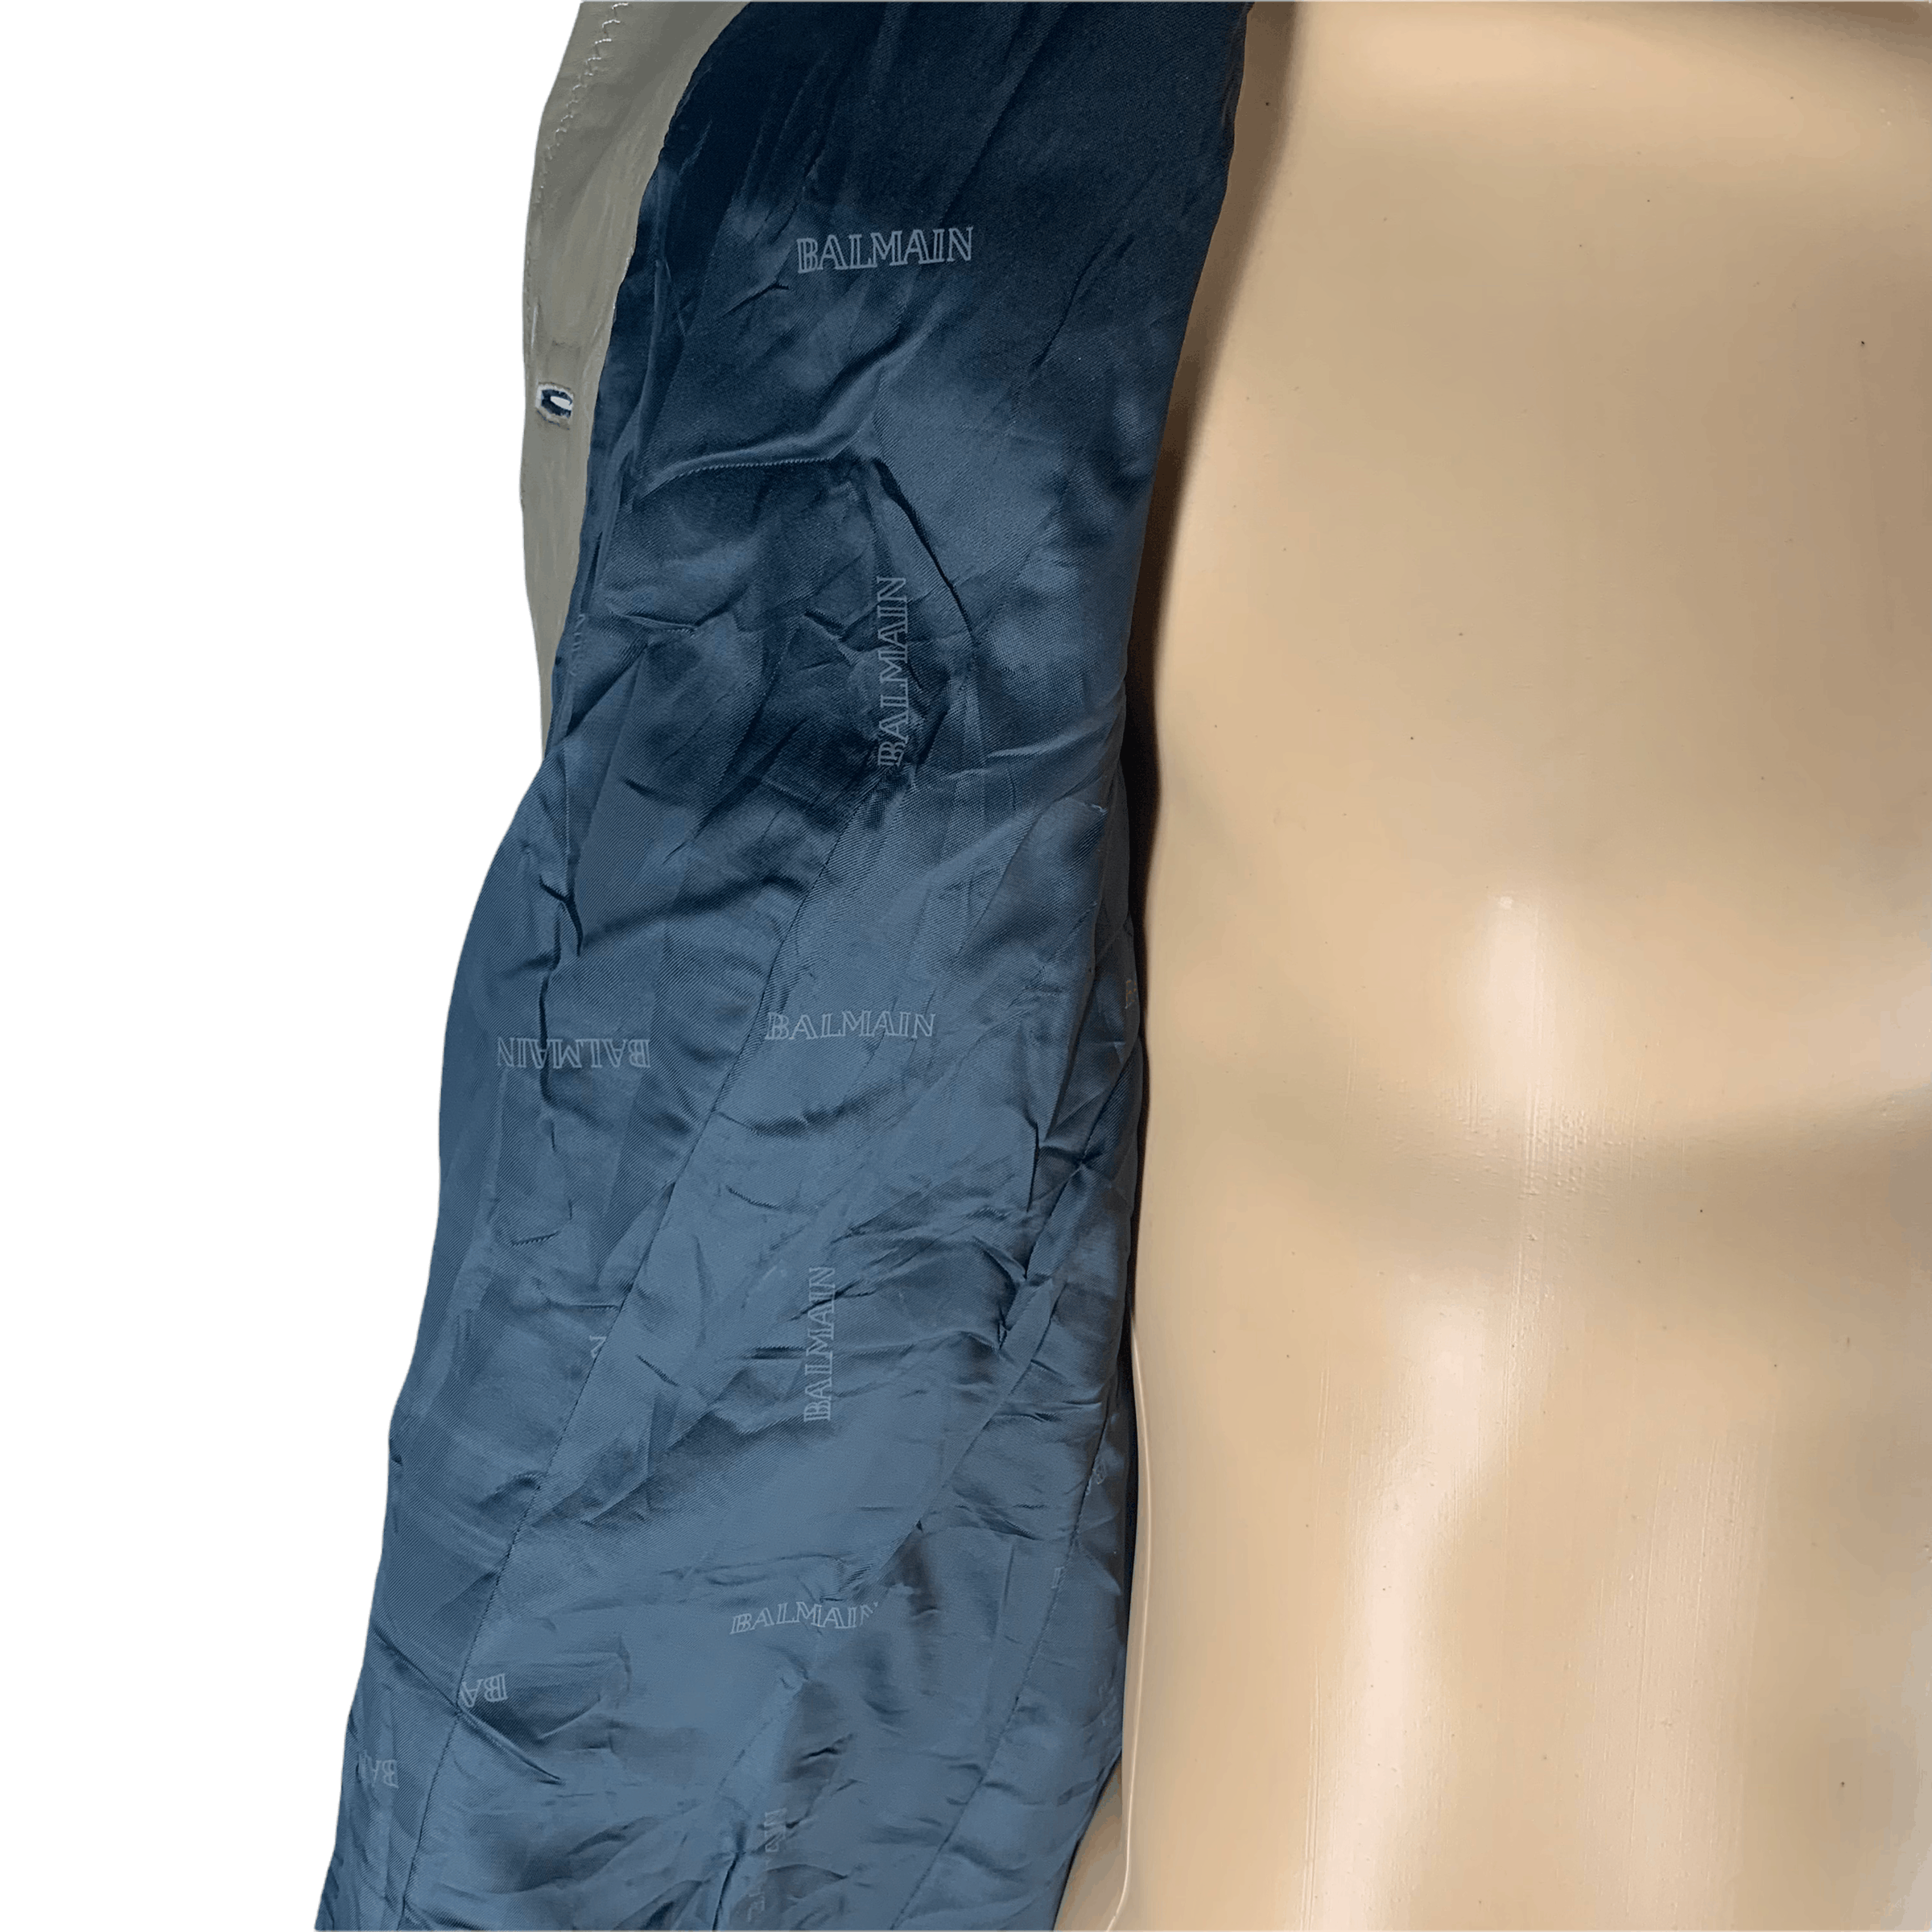 Balmain Paris Leather Hooded Long Vest #3542-47 - 9